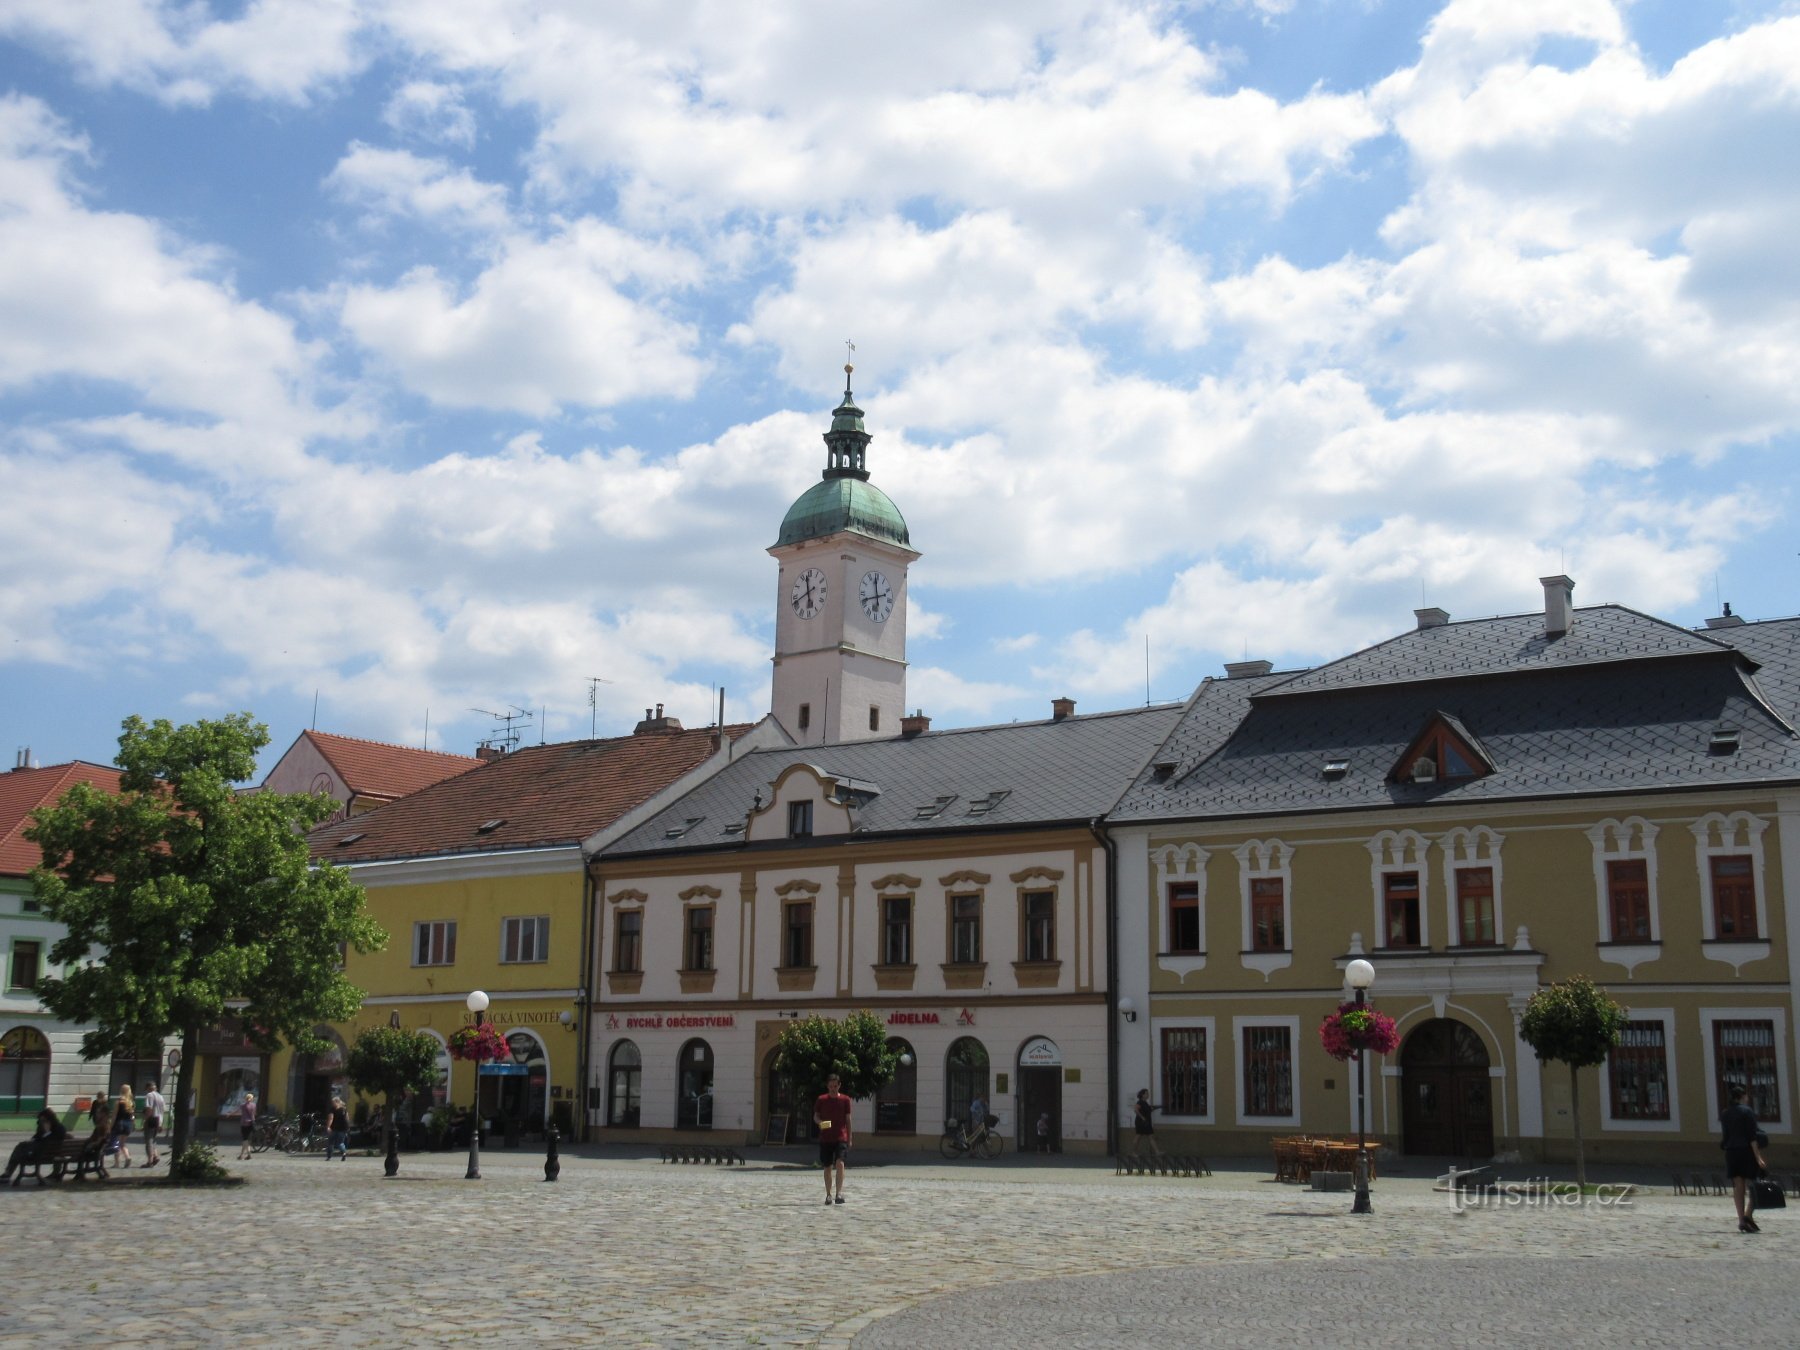 Mariánské náměstí - 右边是 U Sovy 的房子，在旧市政厅的塔楼后面